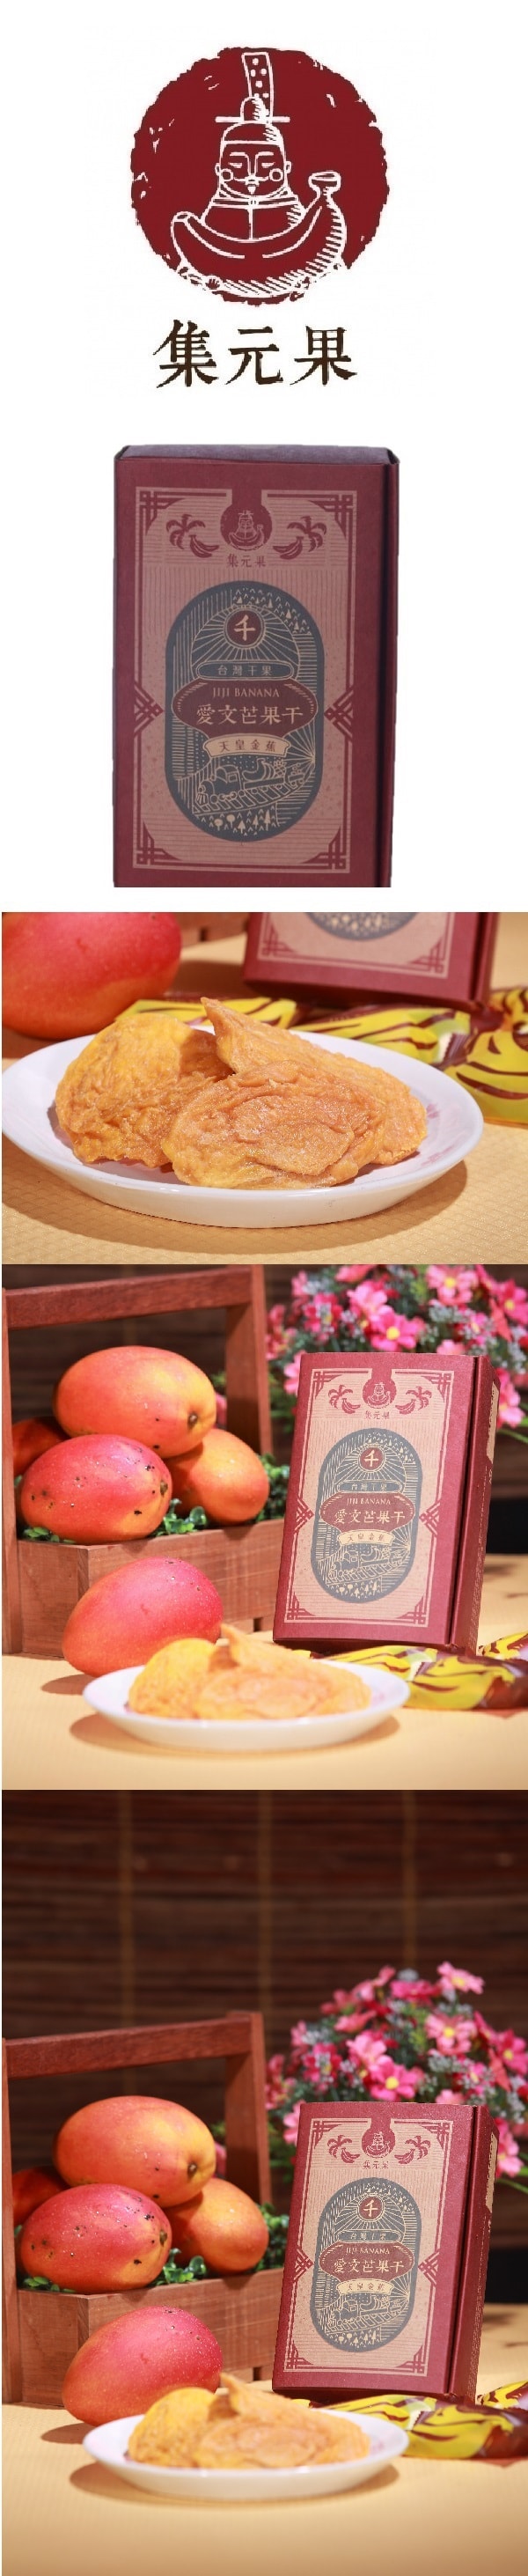 [Taiwan Direct Mail] Jiyuanguo Aiwen Dried Mango 80g/box